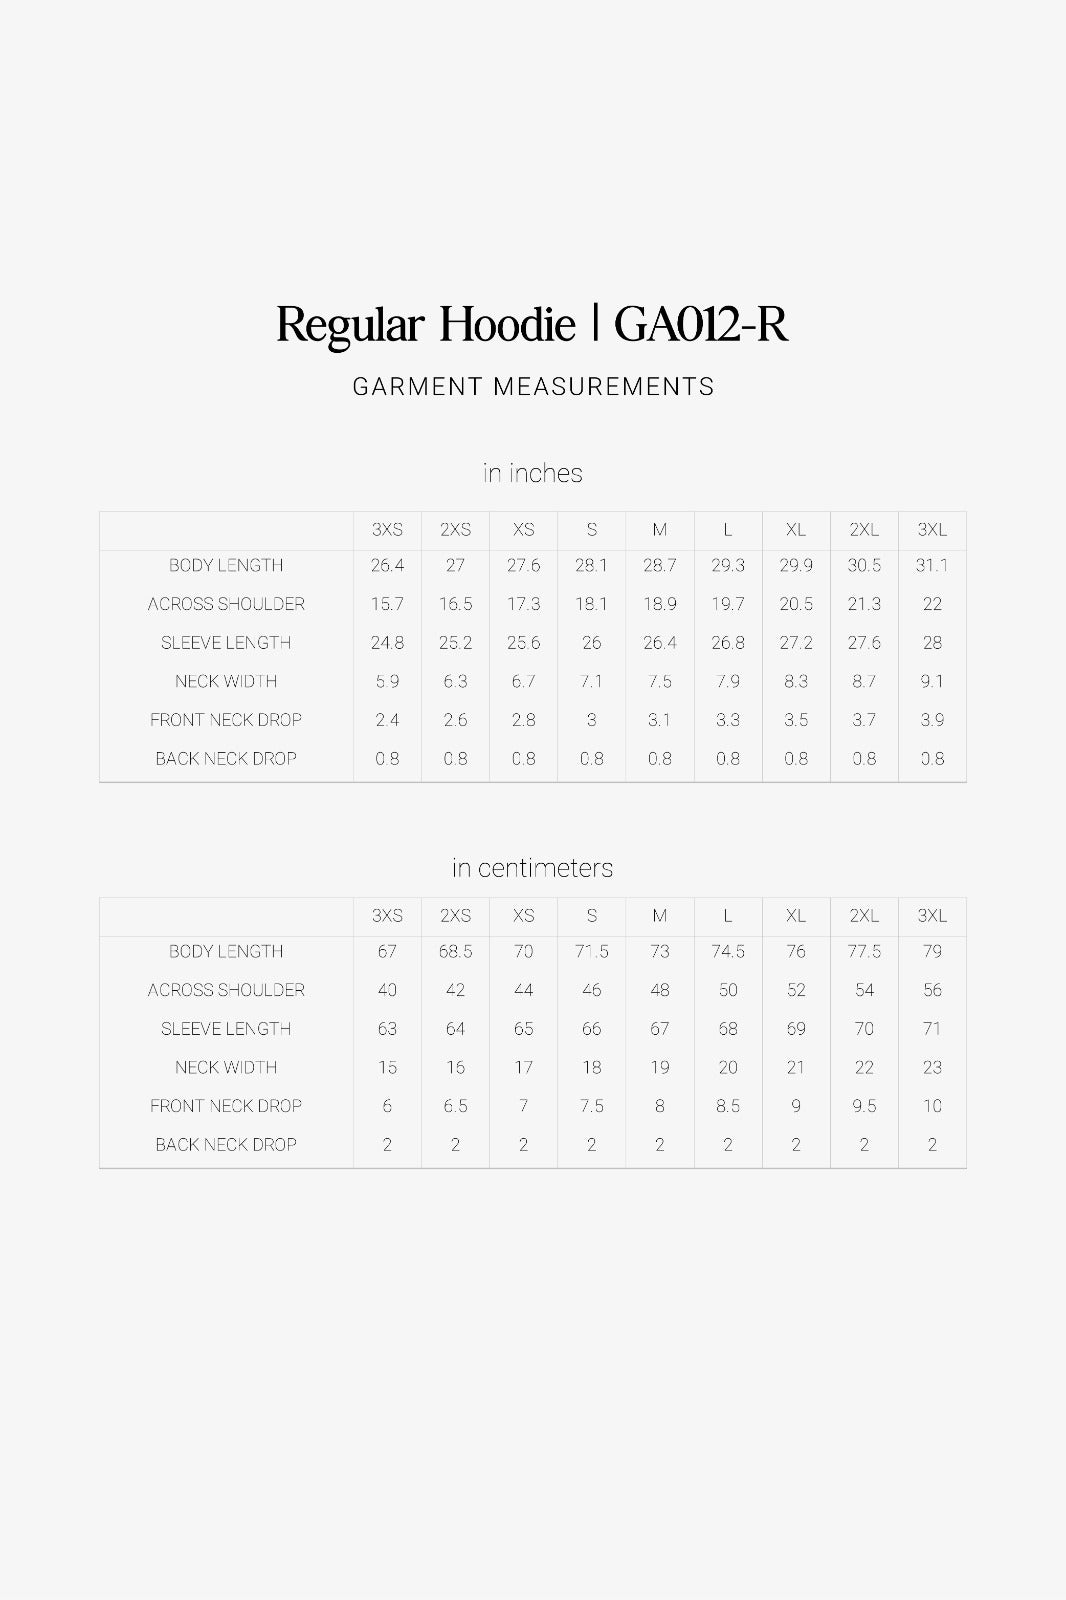 Regular Hoodie Pattern